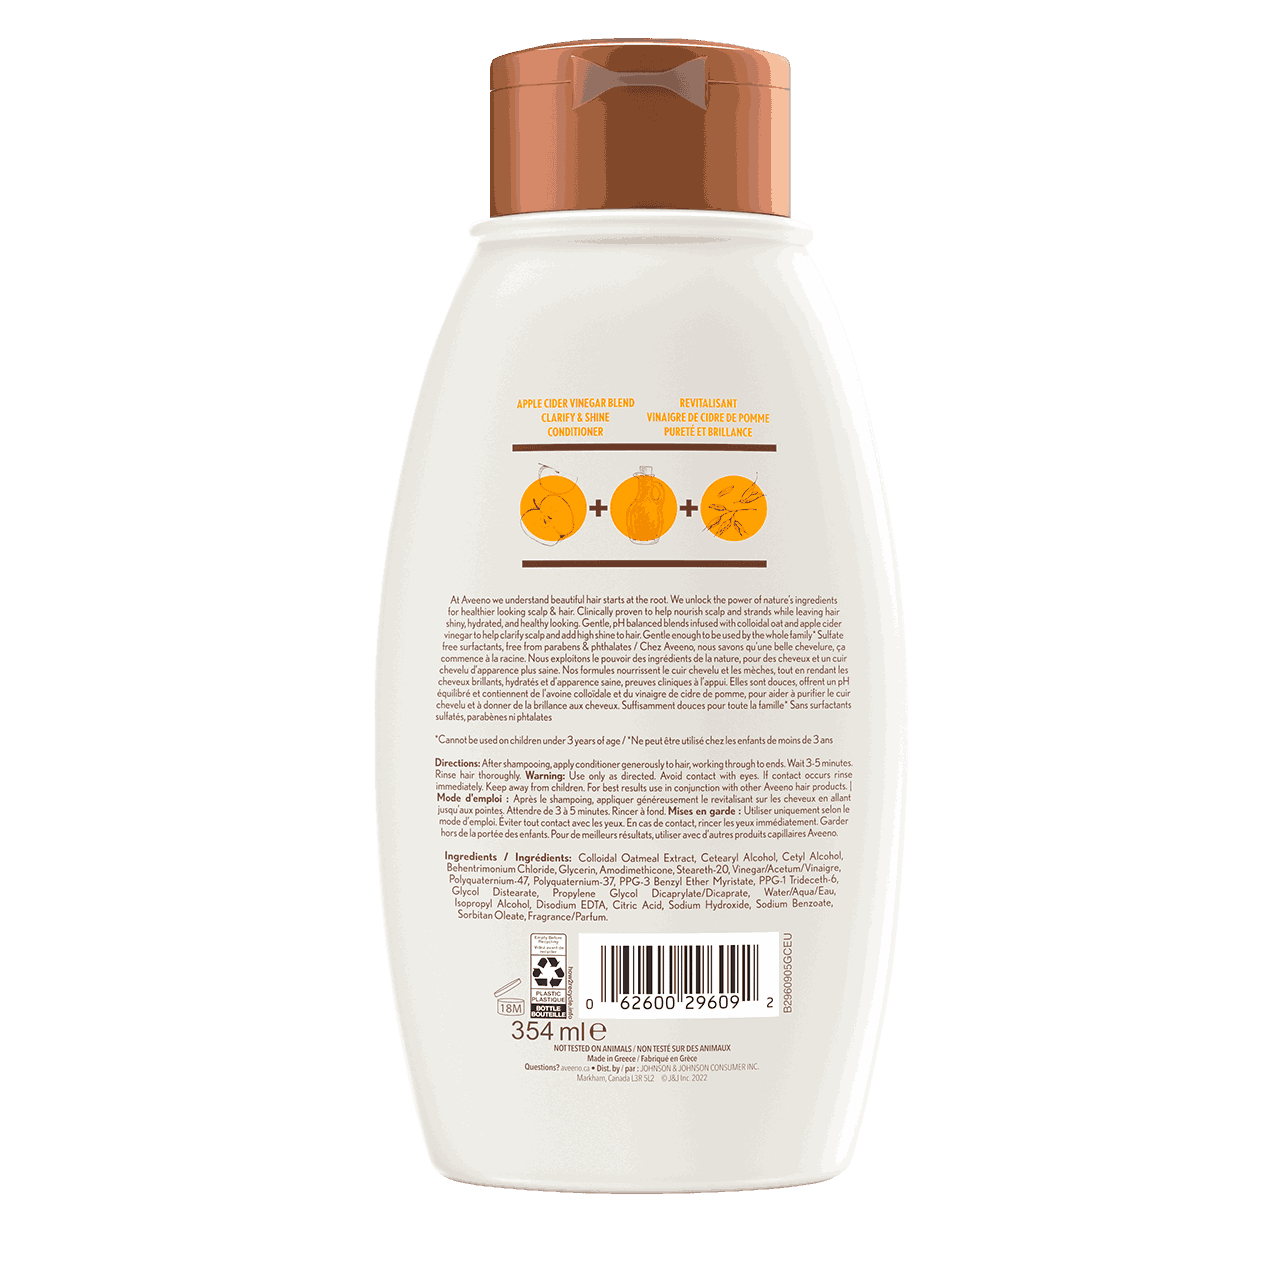 AVEENO® Apple Cider Vinegar Blend Conditioner, 354ml bottle, back label